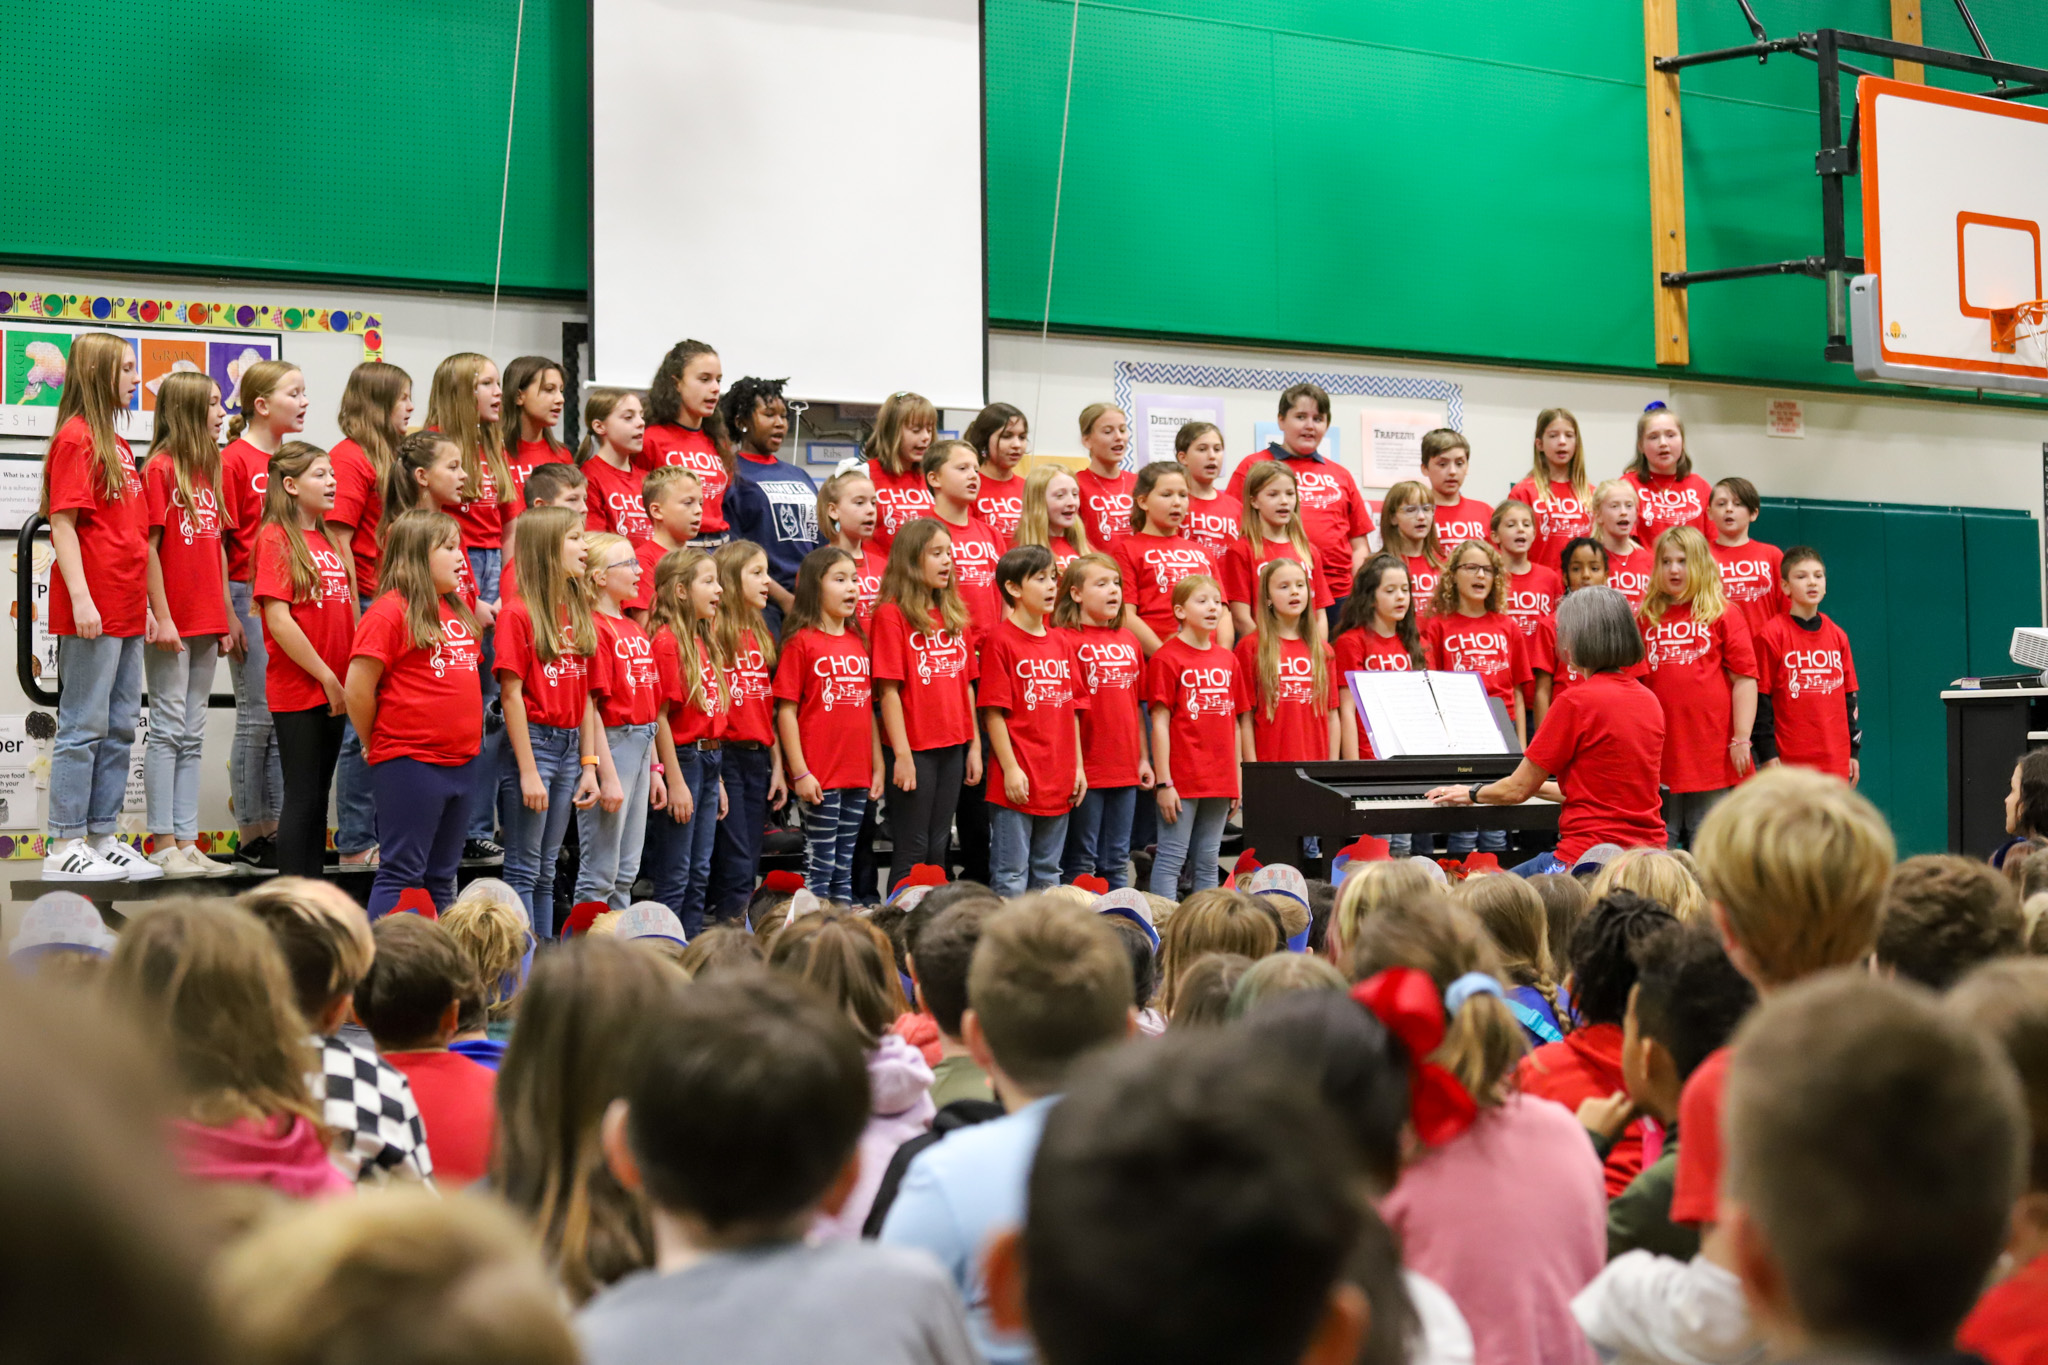 Choir students